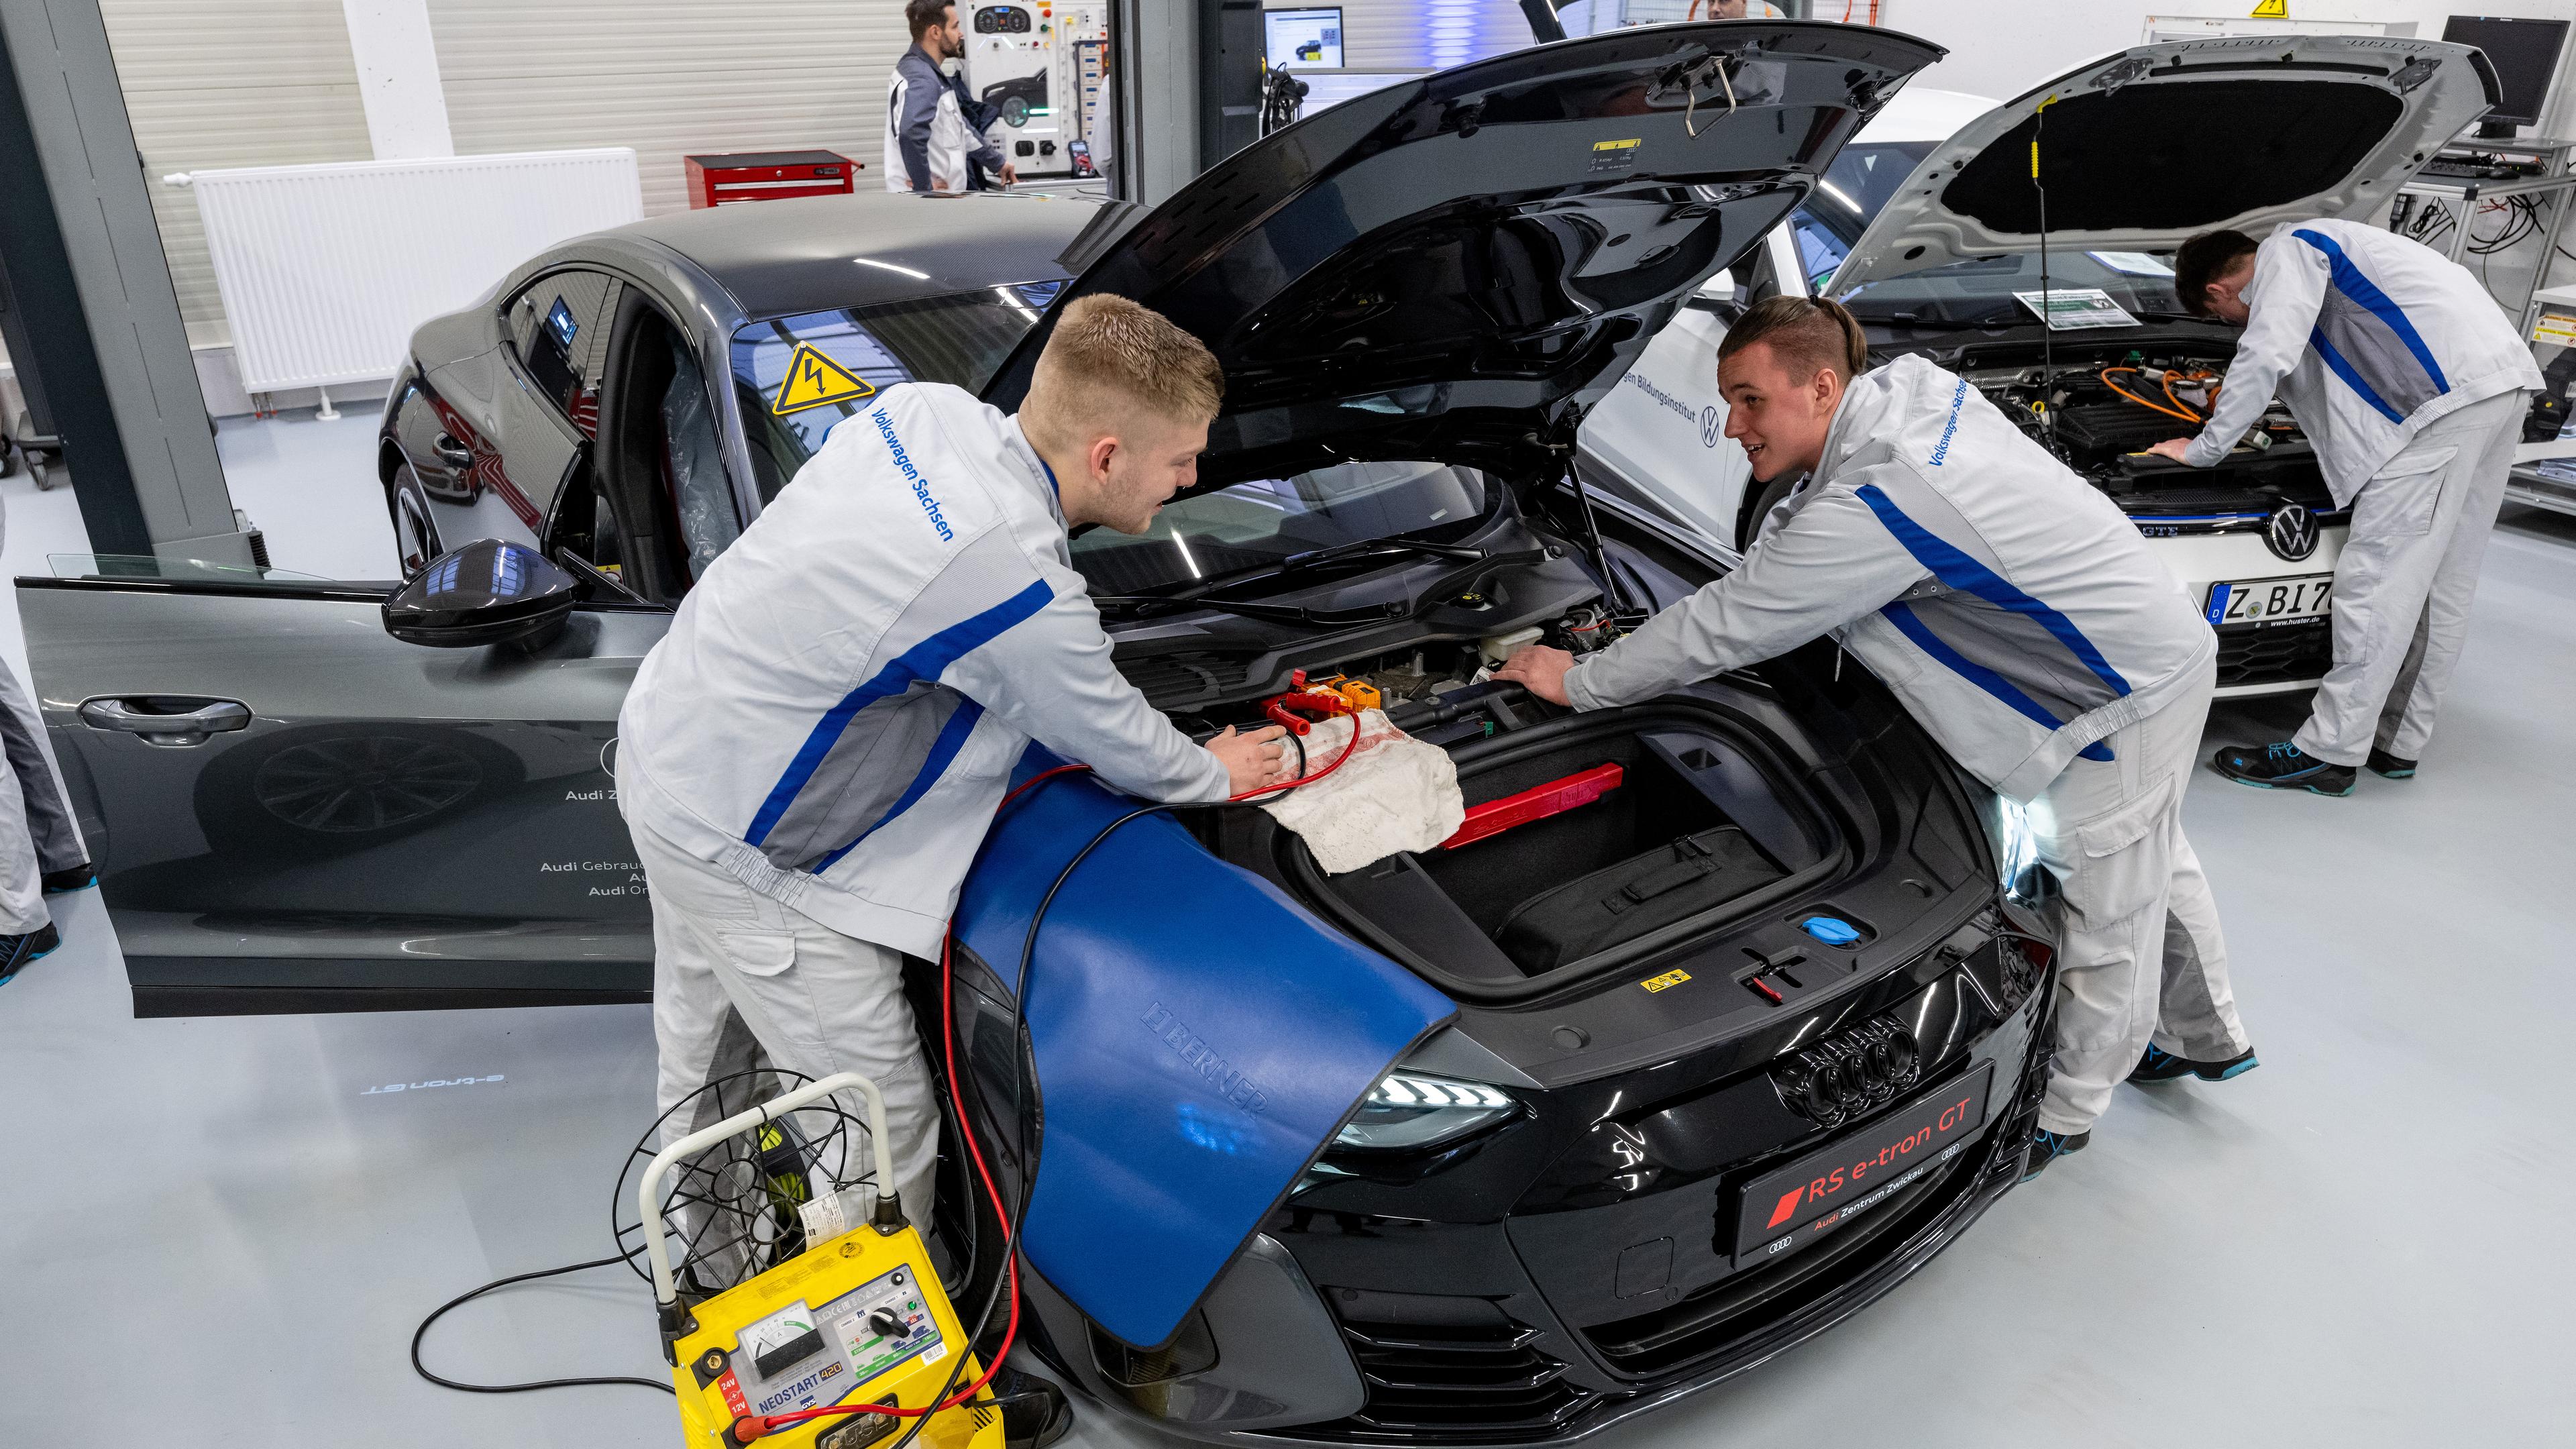 Auszubildende zum KfZ-Mechatroniker arbeiten im Volkswagen Bildungsinstitut in Zwickau an einem vollelektrischen Audi,l aufgenommen am 8.01.2023 in Zwickau